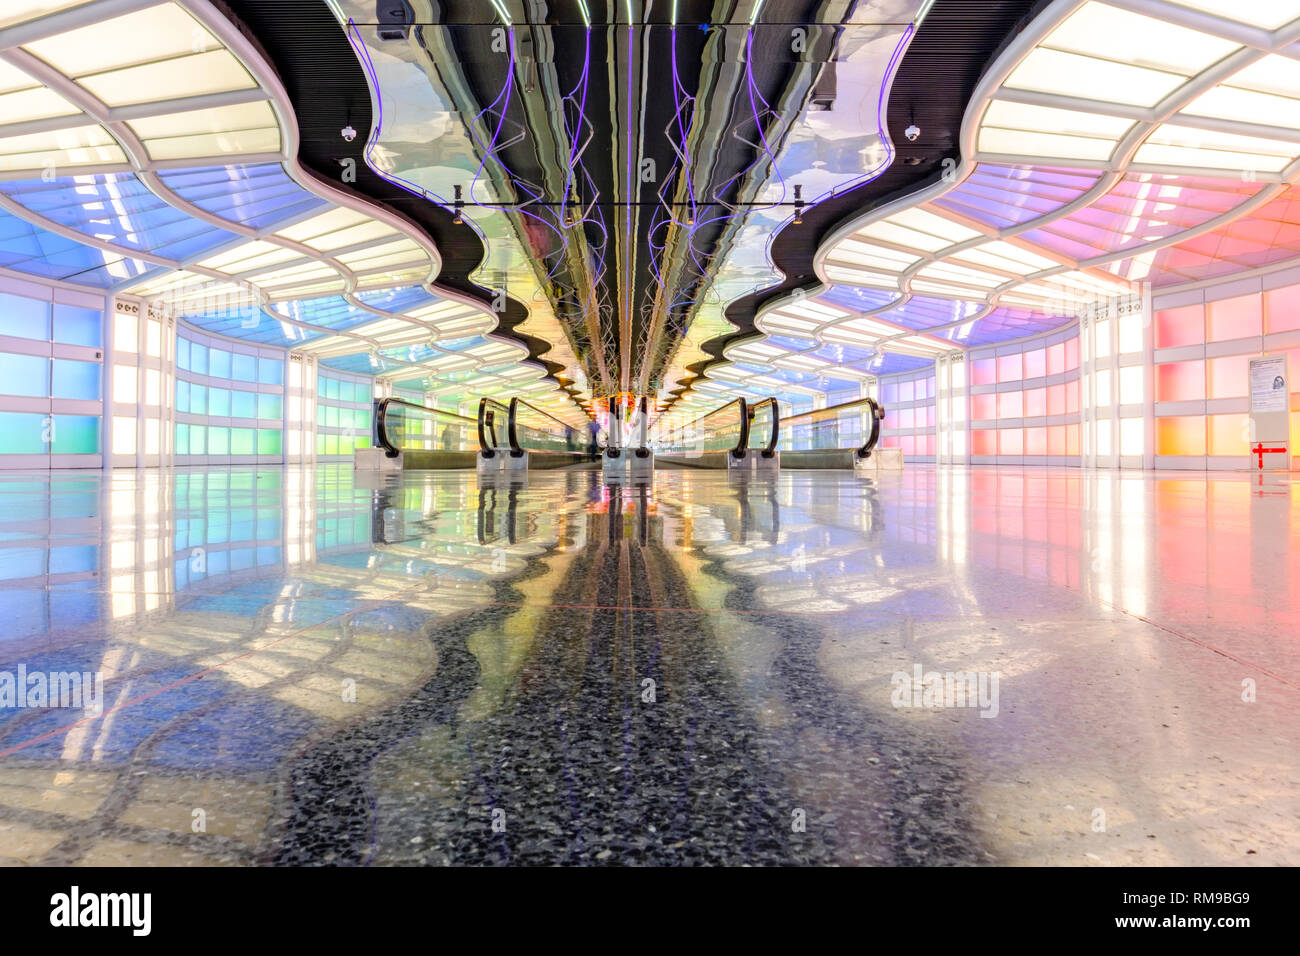 Bewegliche Laufstege, Helmut Jahn-Tunneldurchgang des United Airlines Terminal, Chicago O'Hare International Airport Terminal, Chicago, Illinois, USA Stockfoto